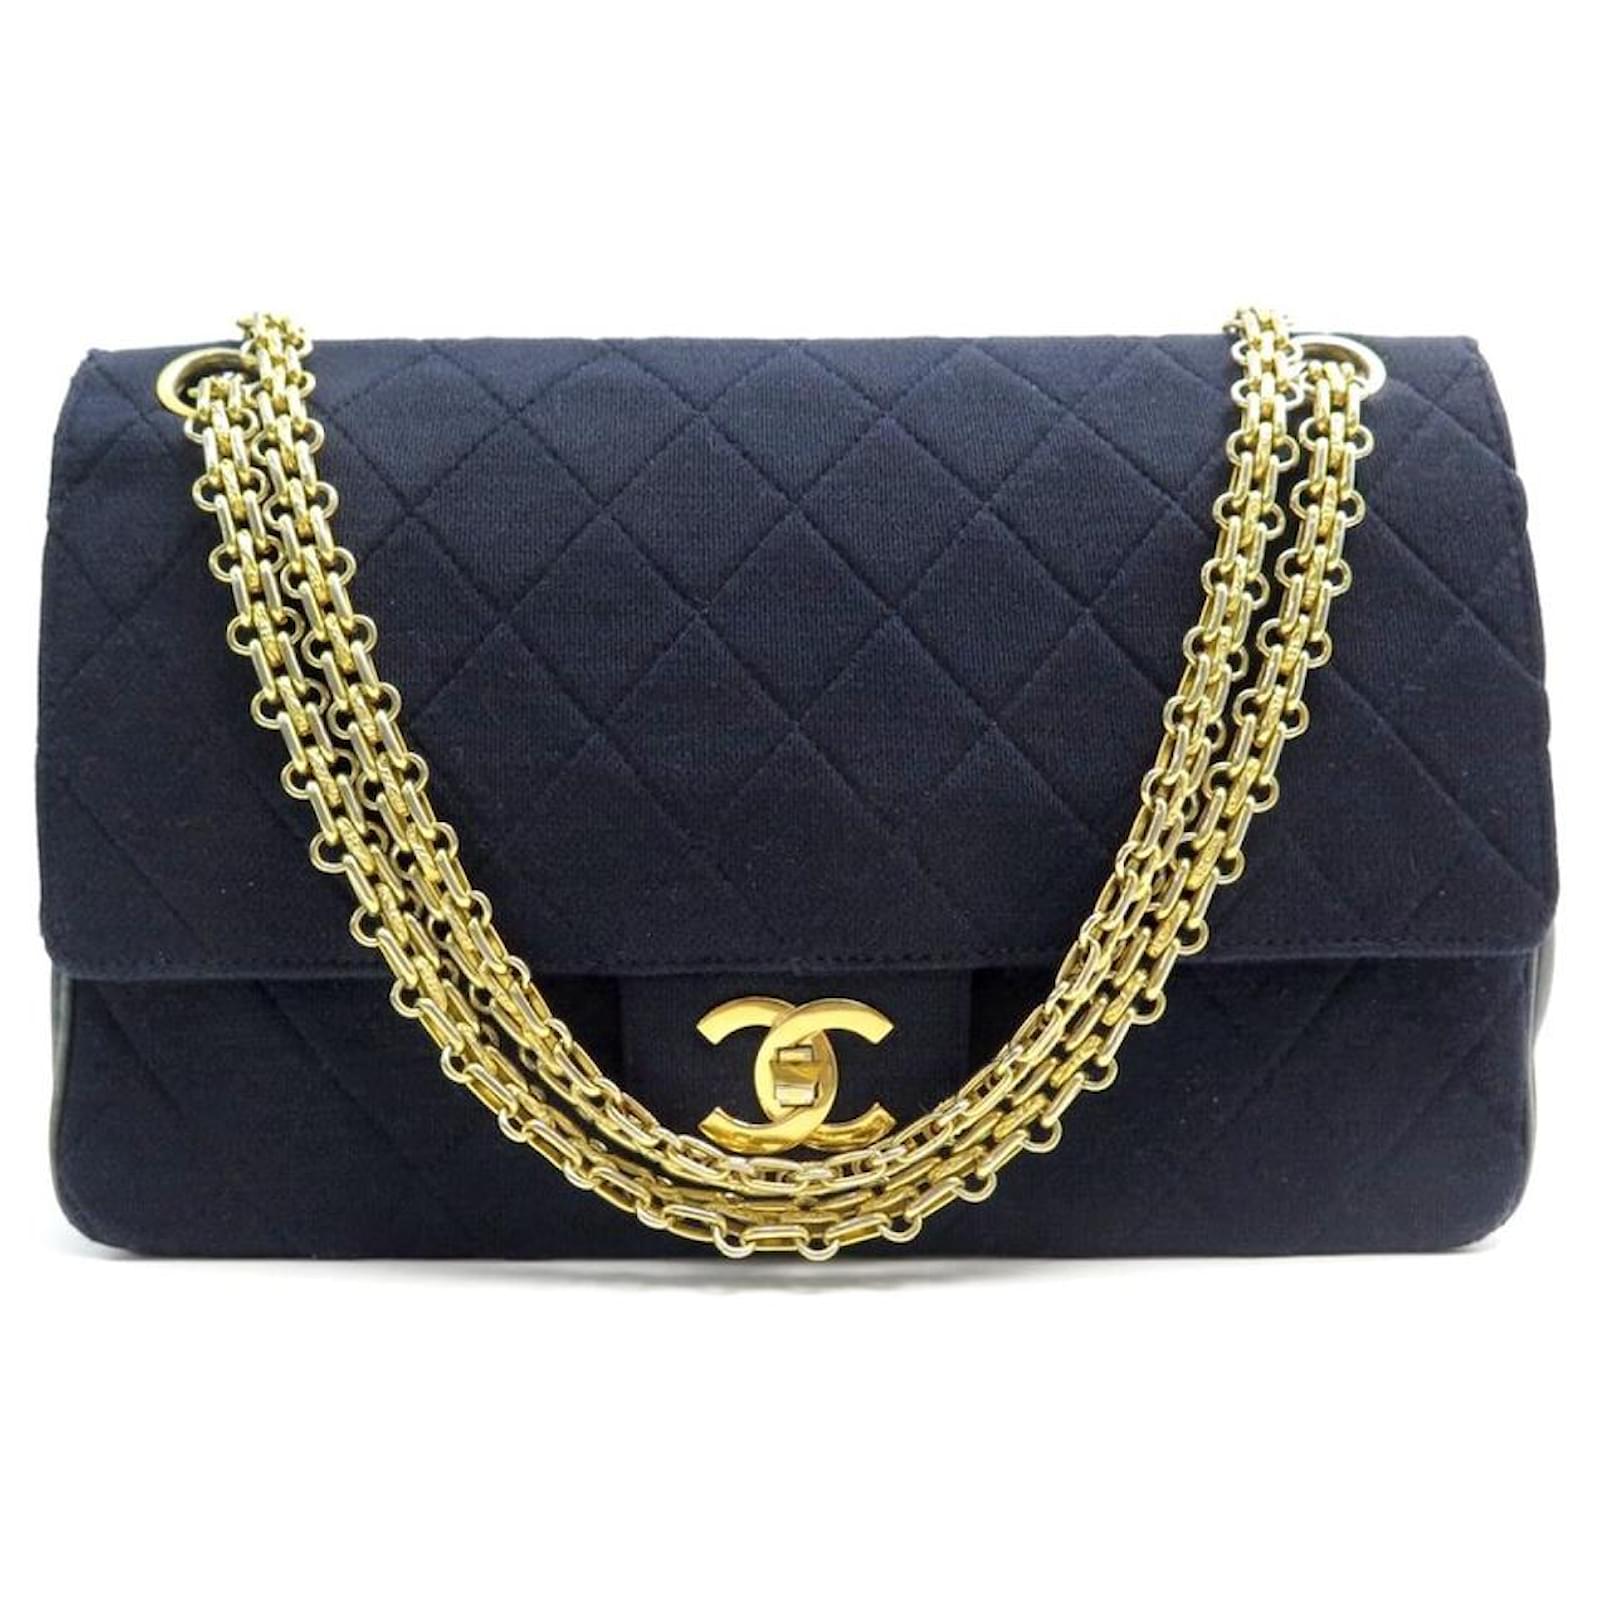 Vintage navy blue Chanel bag